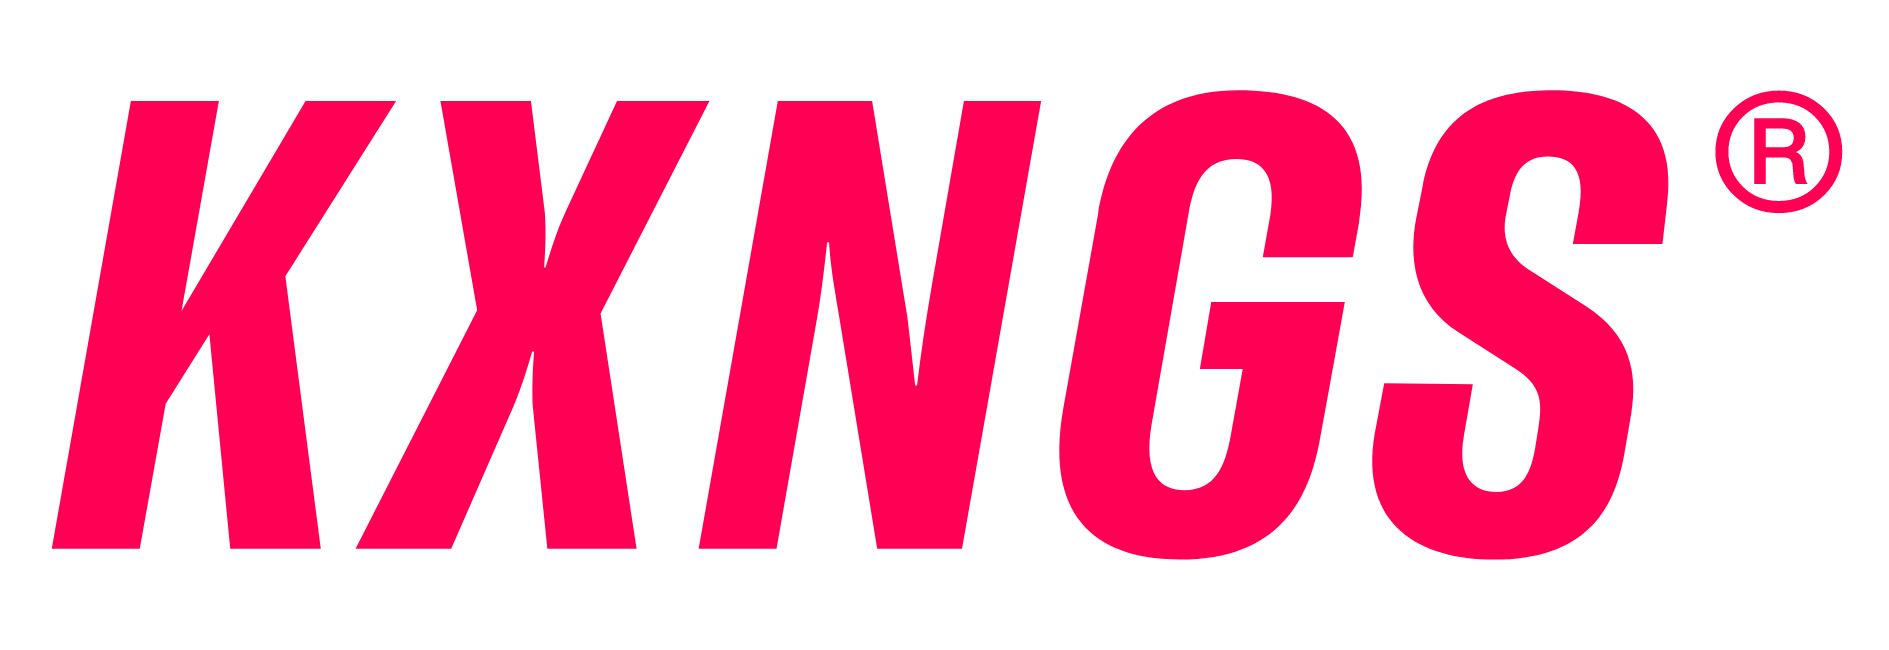 KXNGS logo